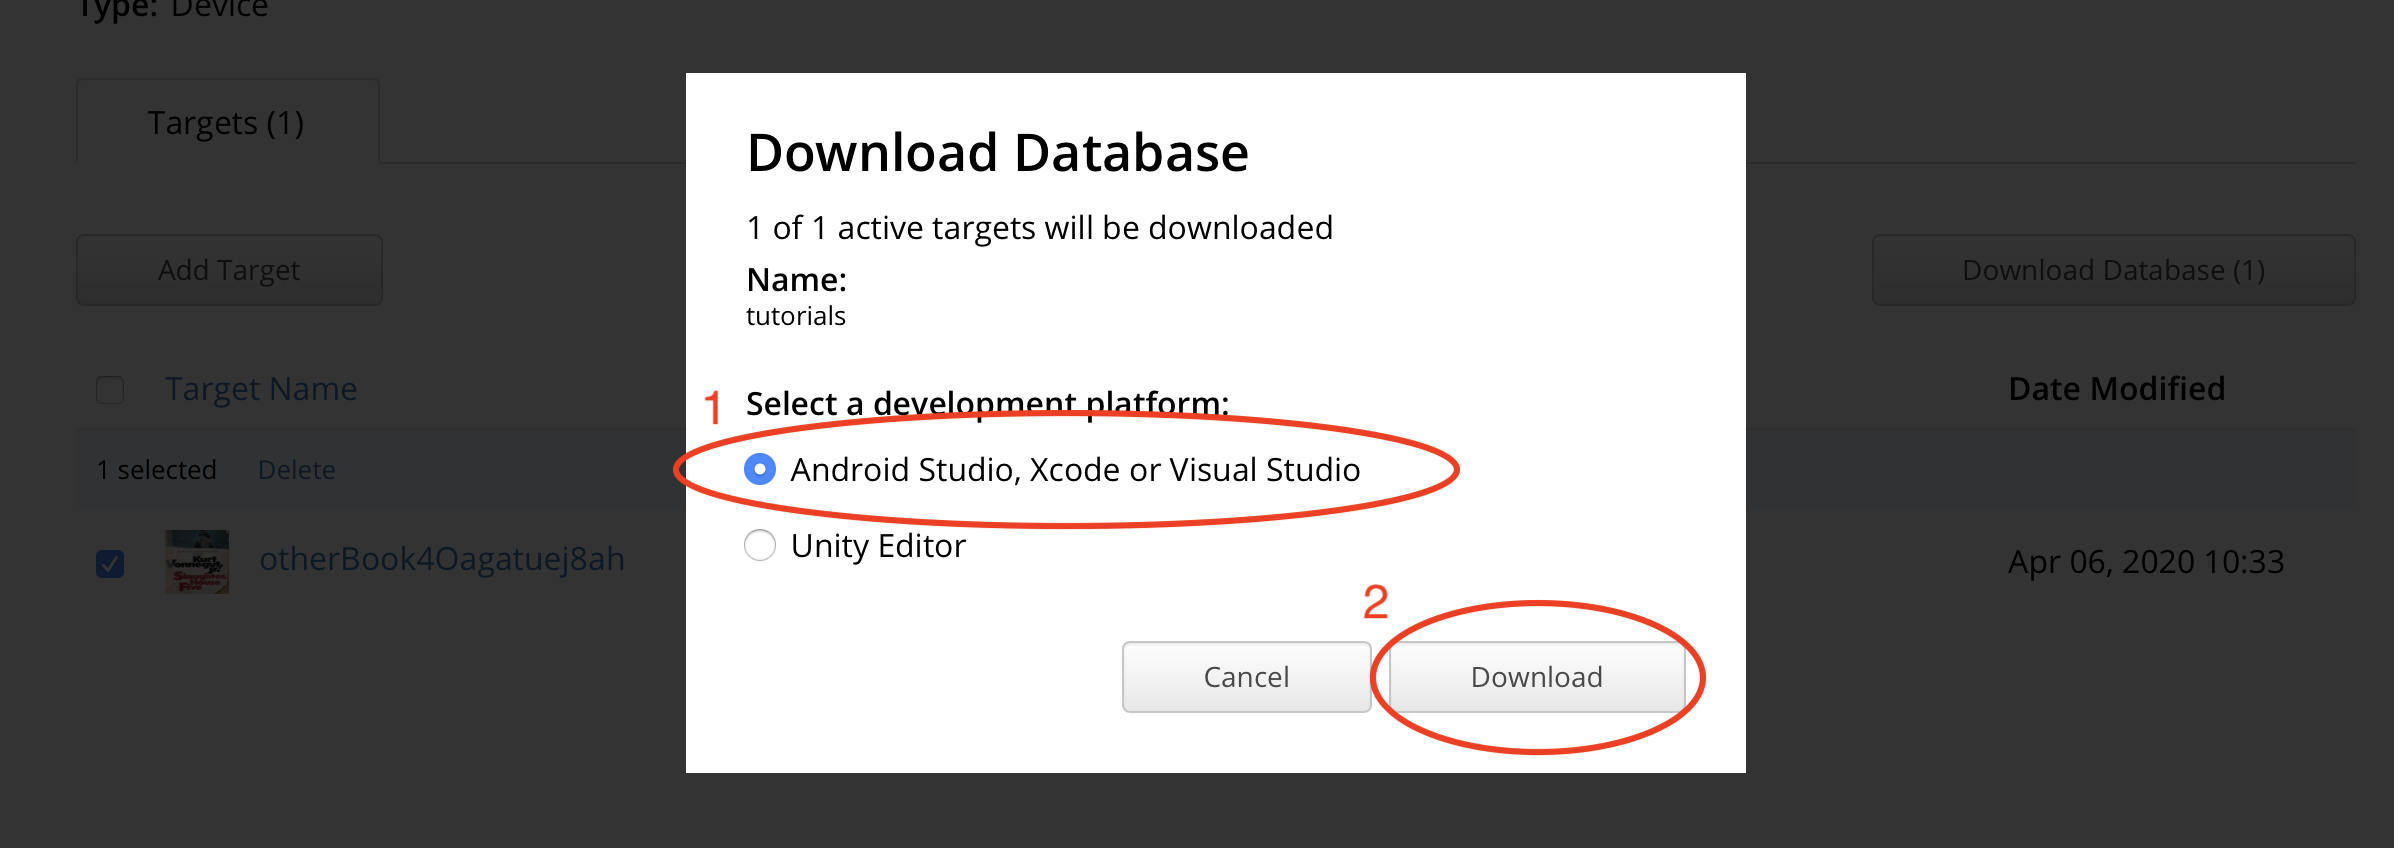 download-database-popup